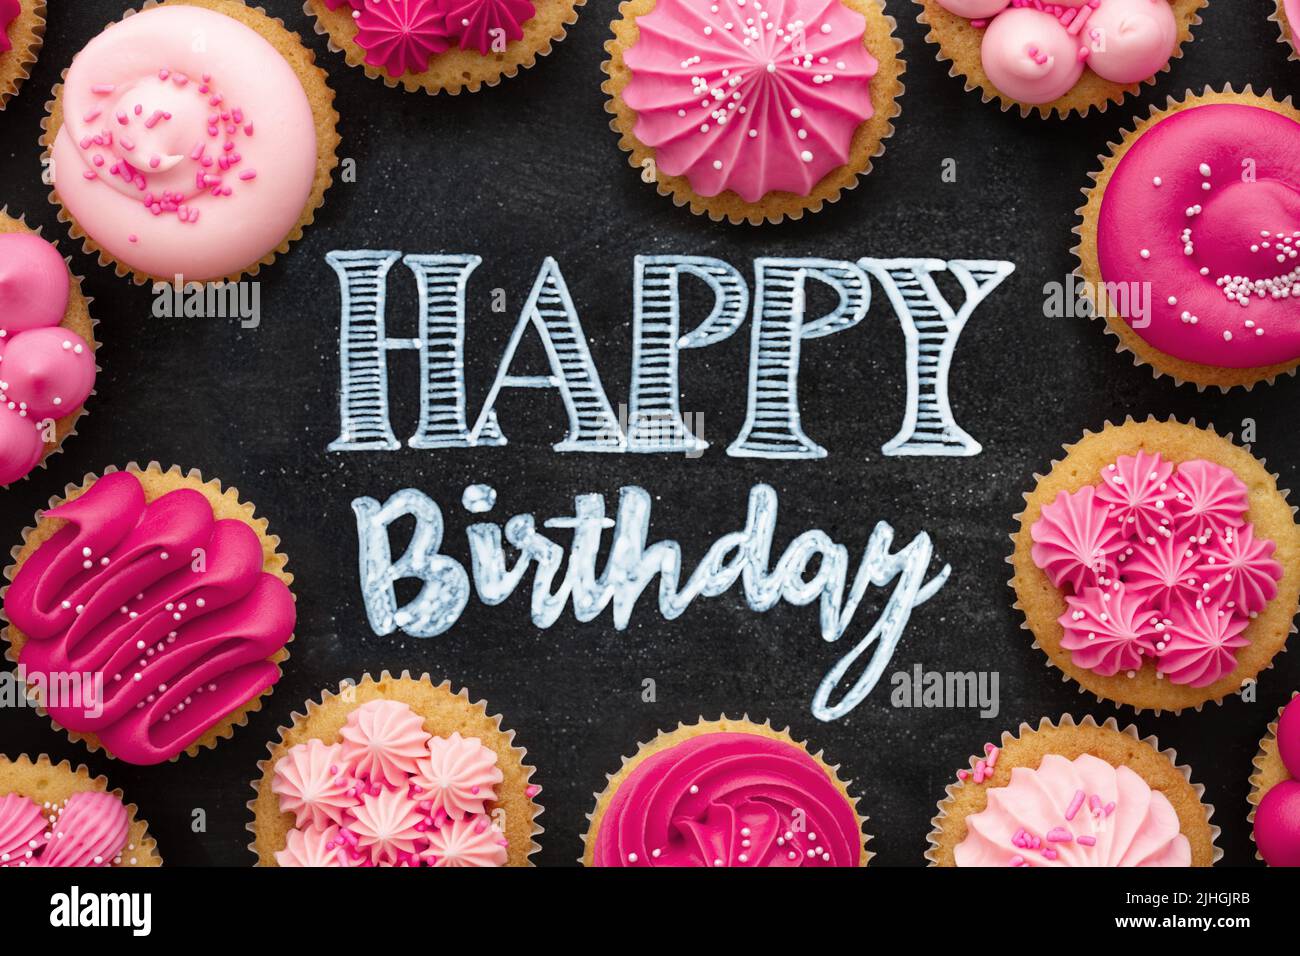 Vista superior de pastelitos rosados de cumpleaños dispuestos en una pizarra con un feliz saludo de cumpleaños escrito en tiza Foto de stock